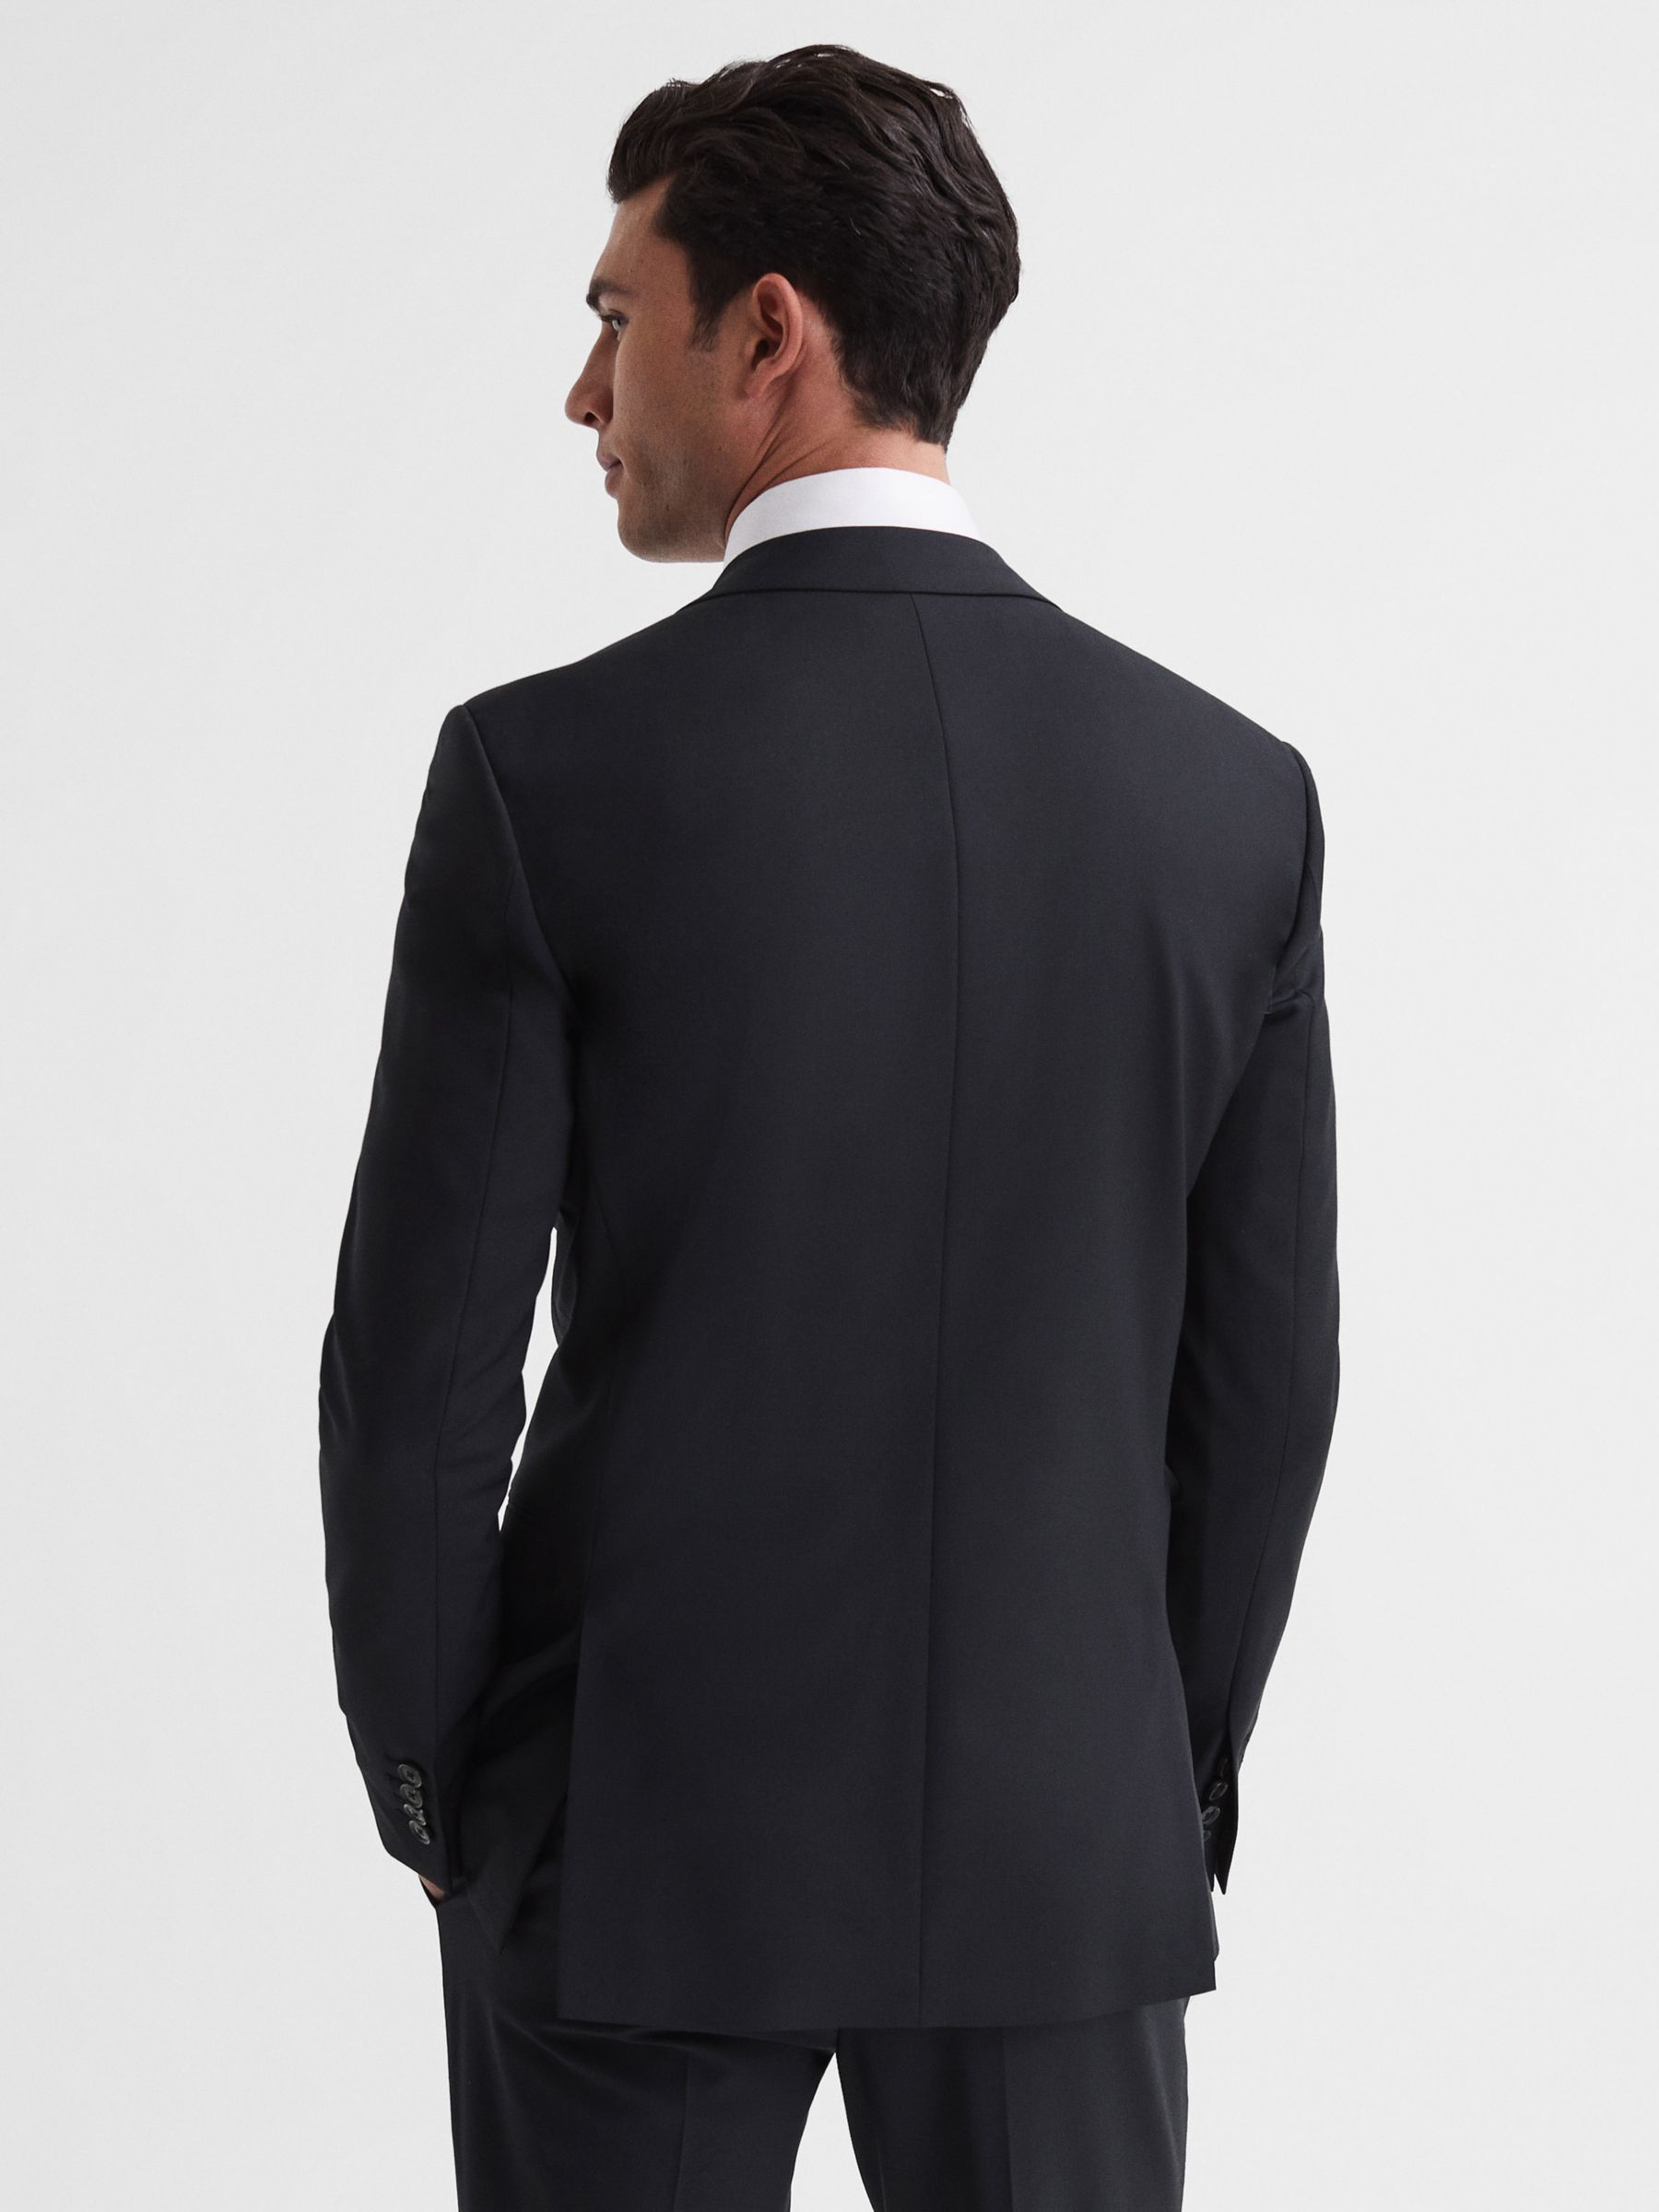 Buy Reiss Hope Wool Blend Suit Jacket Online at johnlewis.com